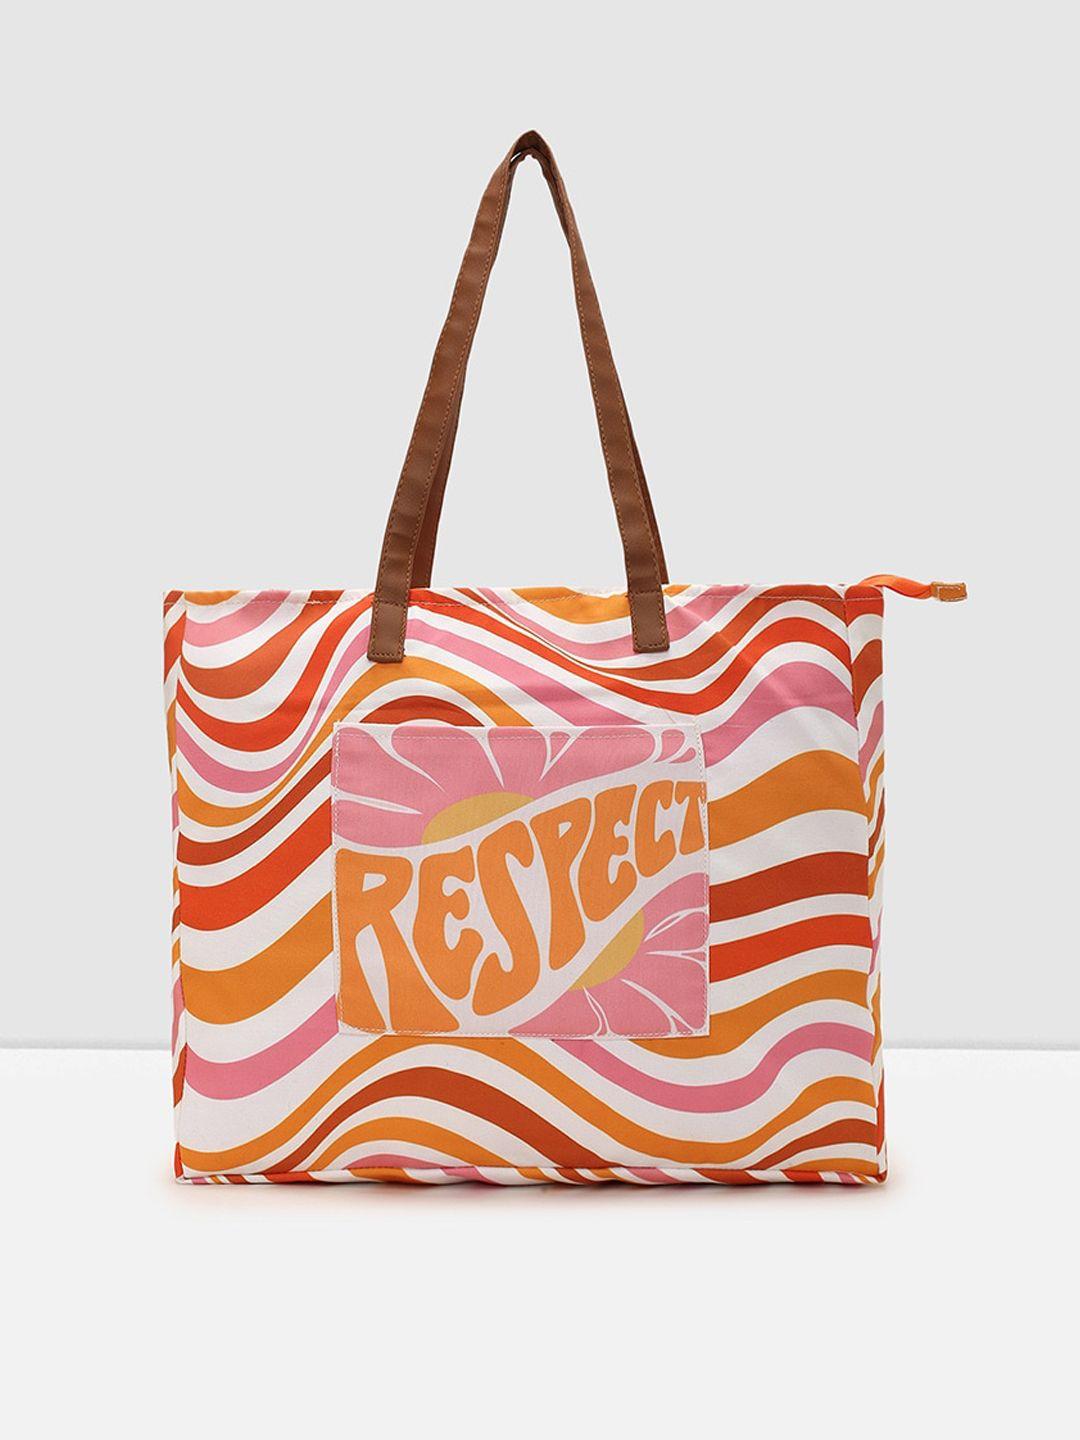 max abstract printed shopper tote bag